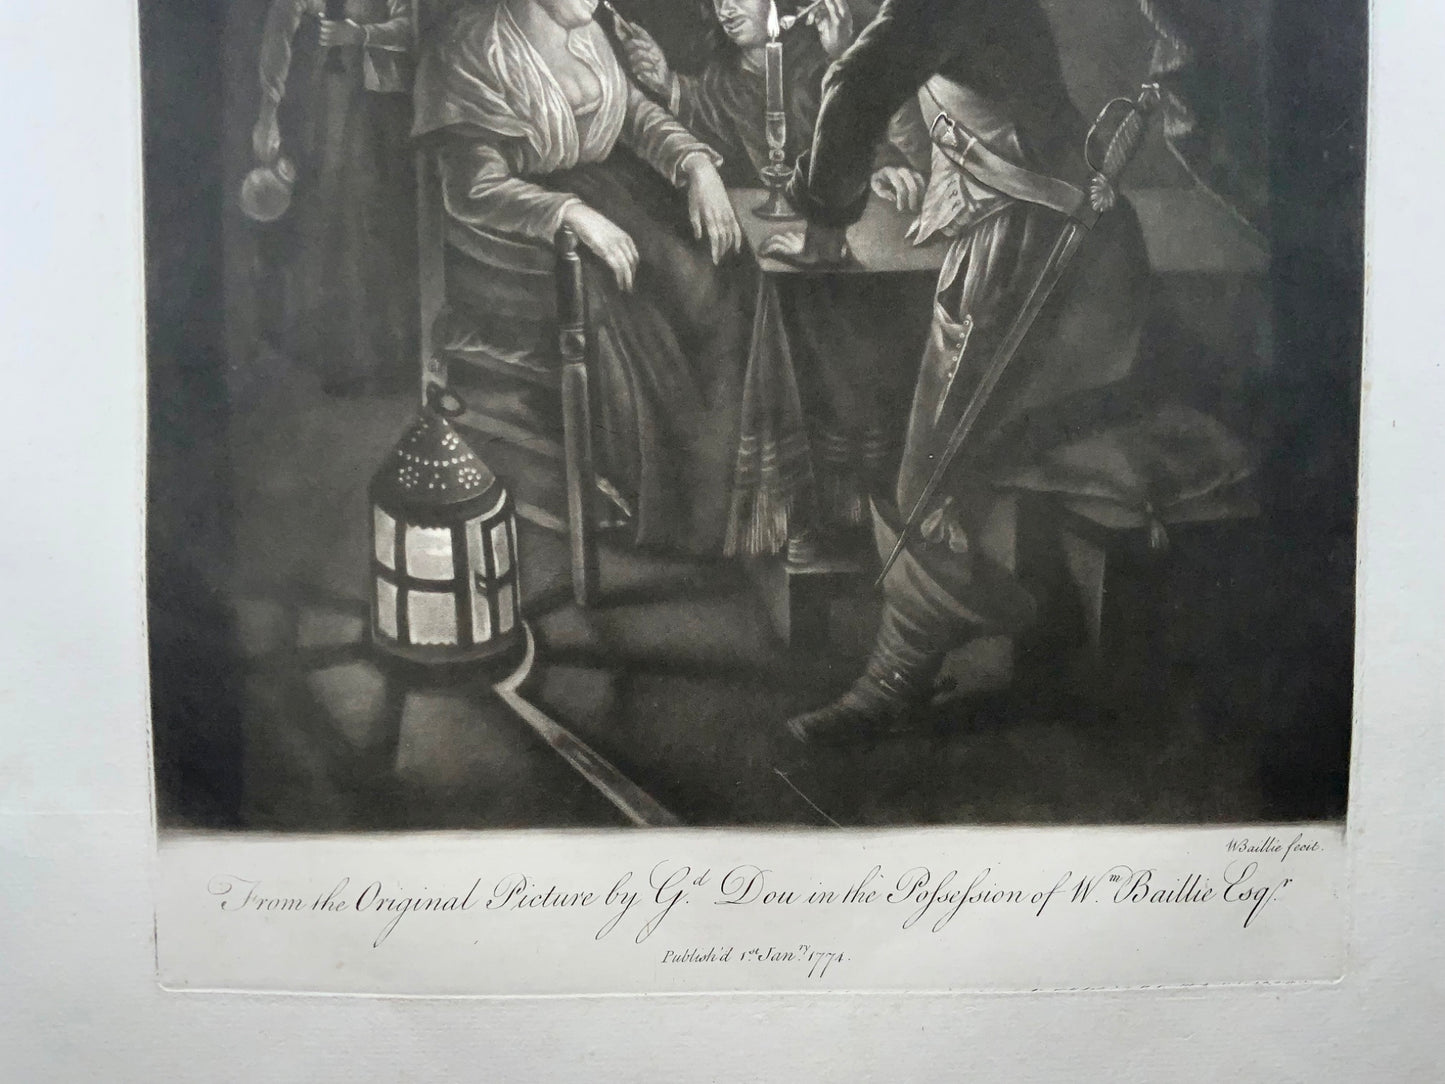 1774 Smoking by Candlelight, manière noire de W. Baillie d'après Gerard Dou, genre